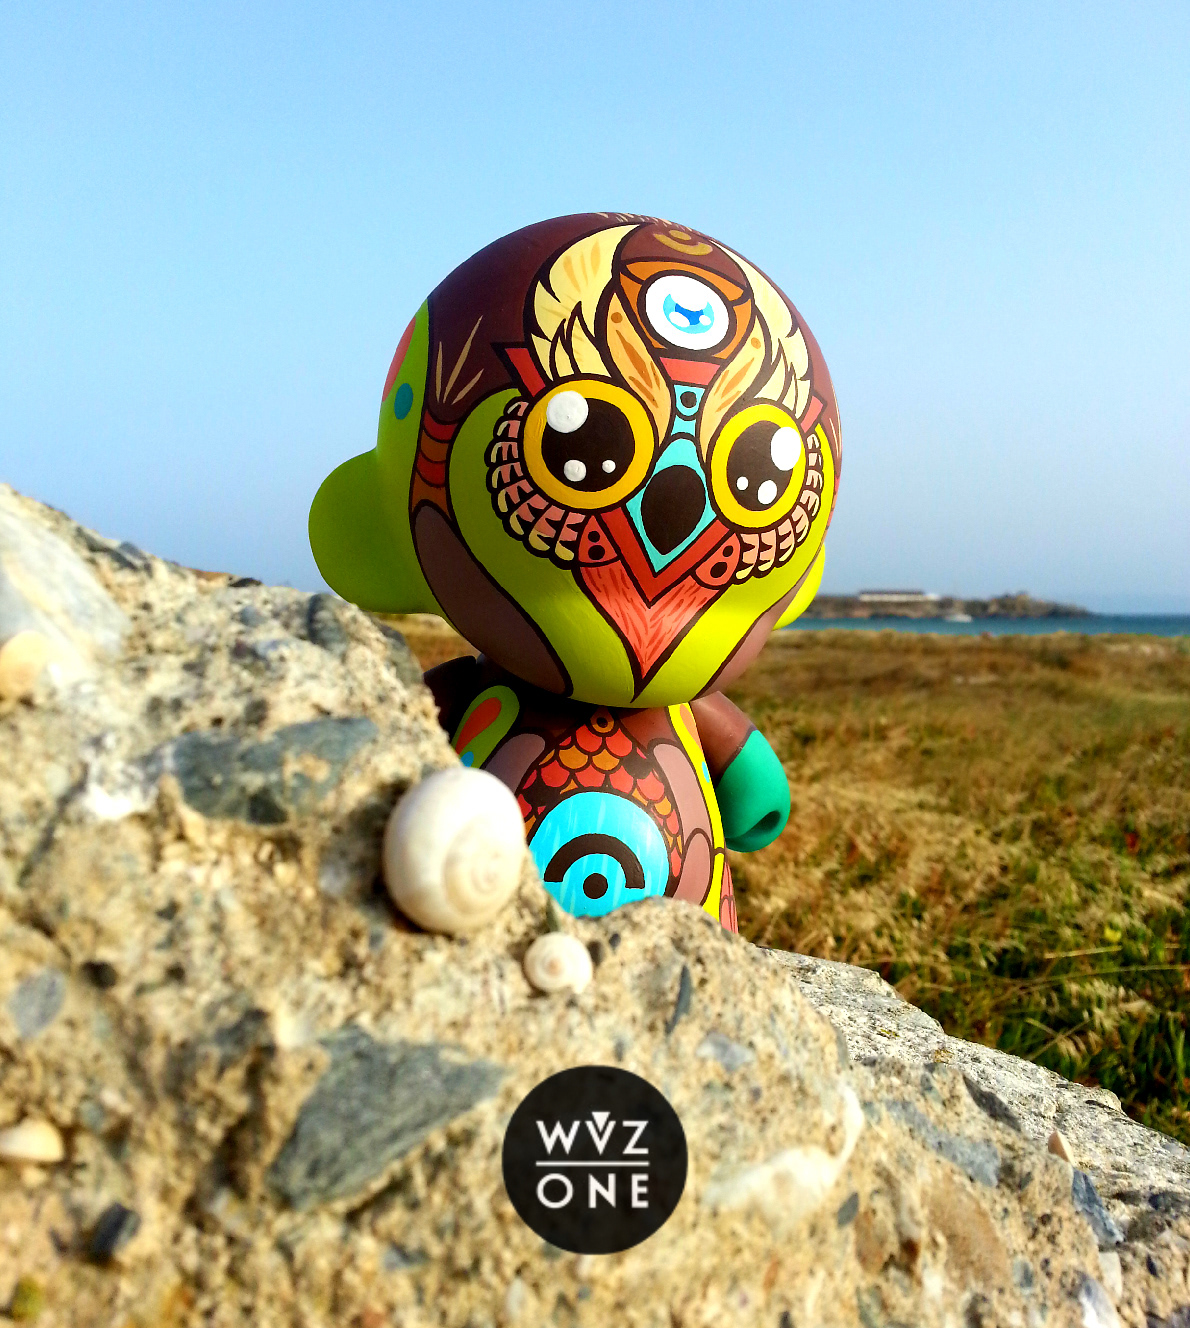 Wuzone owl Dunny Munny Custom handmade ommission sinuhe Kidrobot toy vinyl artoy